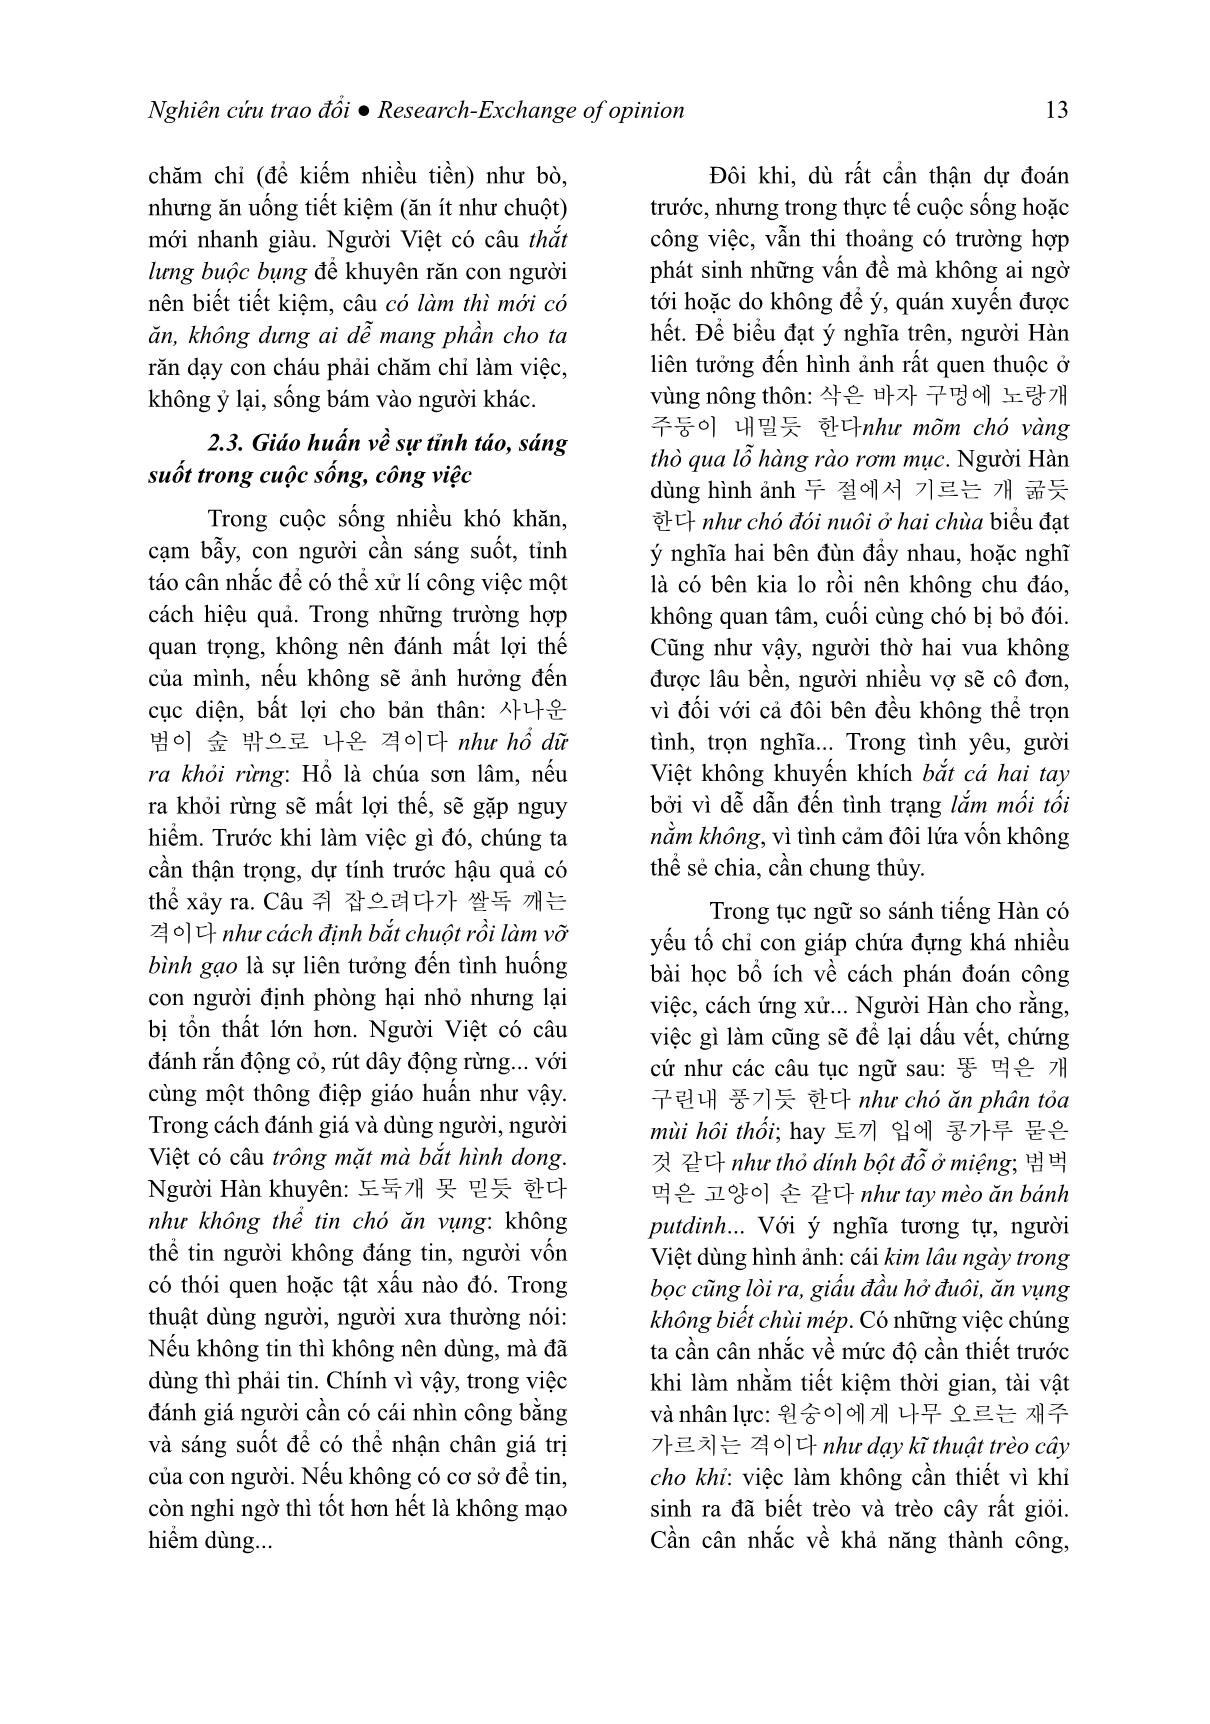 Giá trị giáo huấn của tục ngữ so sánh tiếng Hàn (Trọng tâm là các đơn vị có yếu tố chỉ con giáp) trang 4